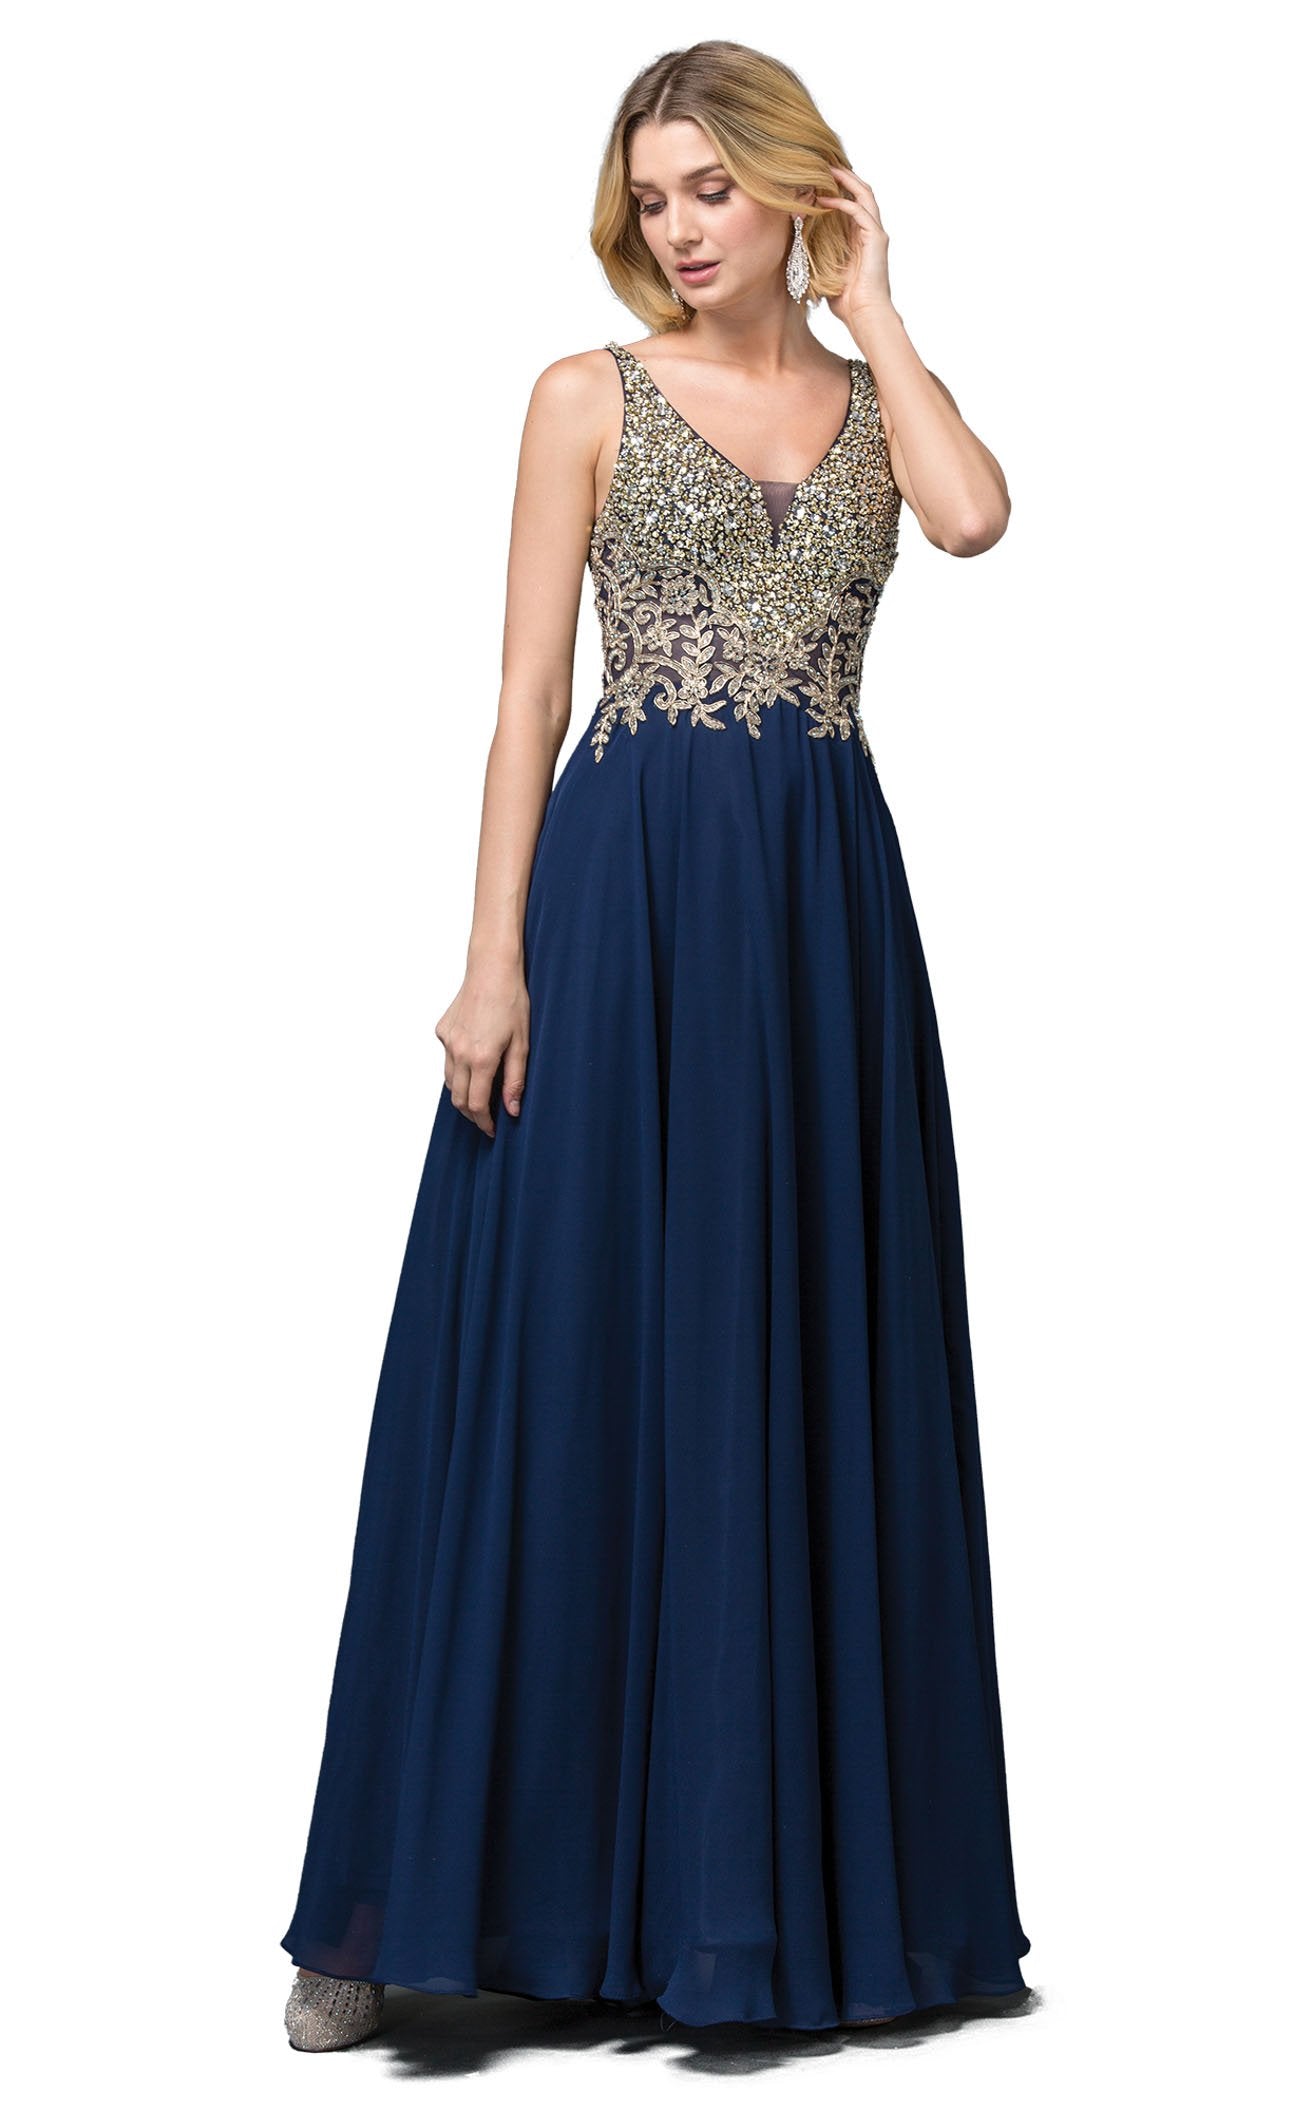 Dancing Queen 2494 Dress | NewYorkDress.com Online Store ...